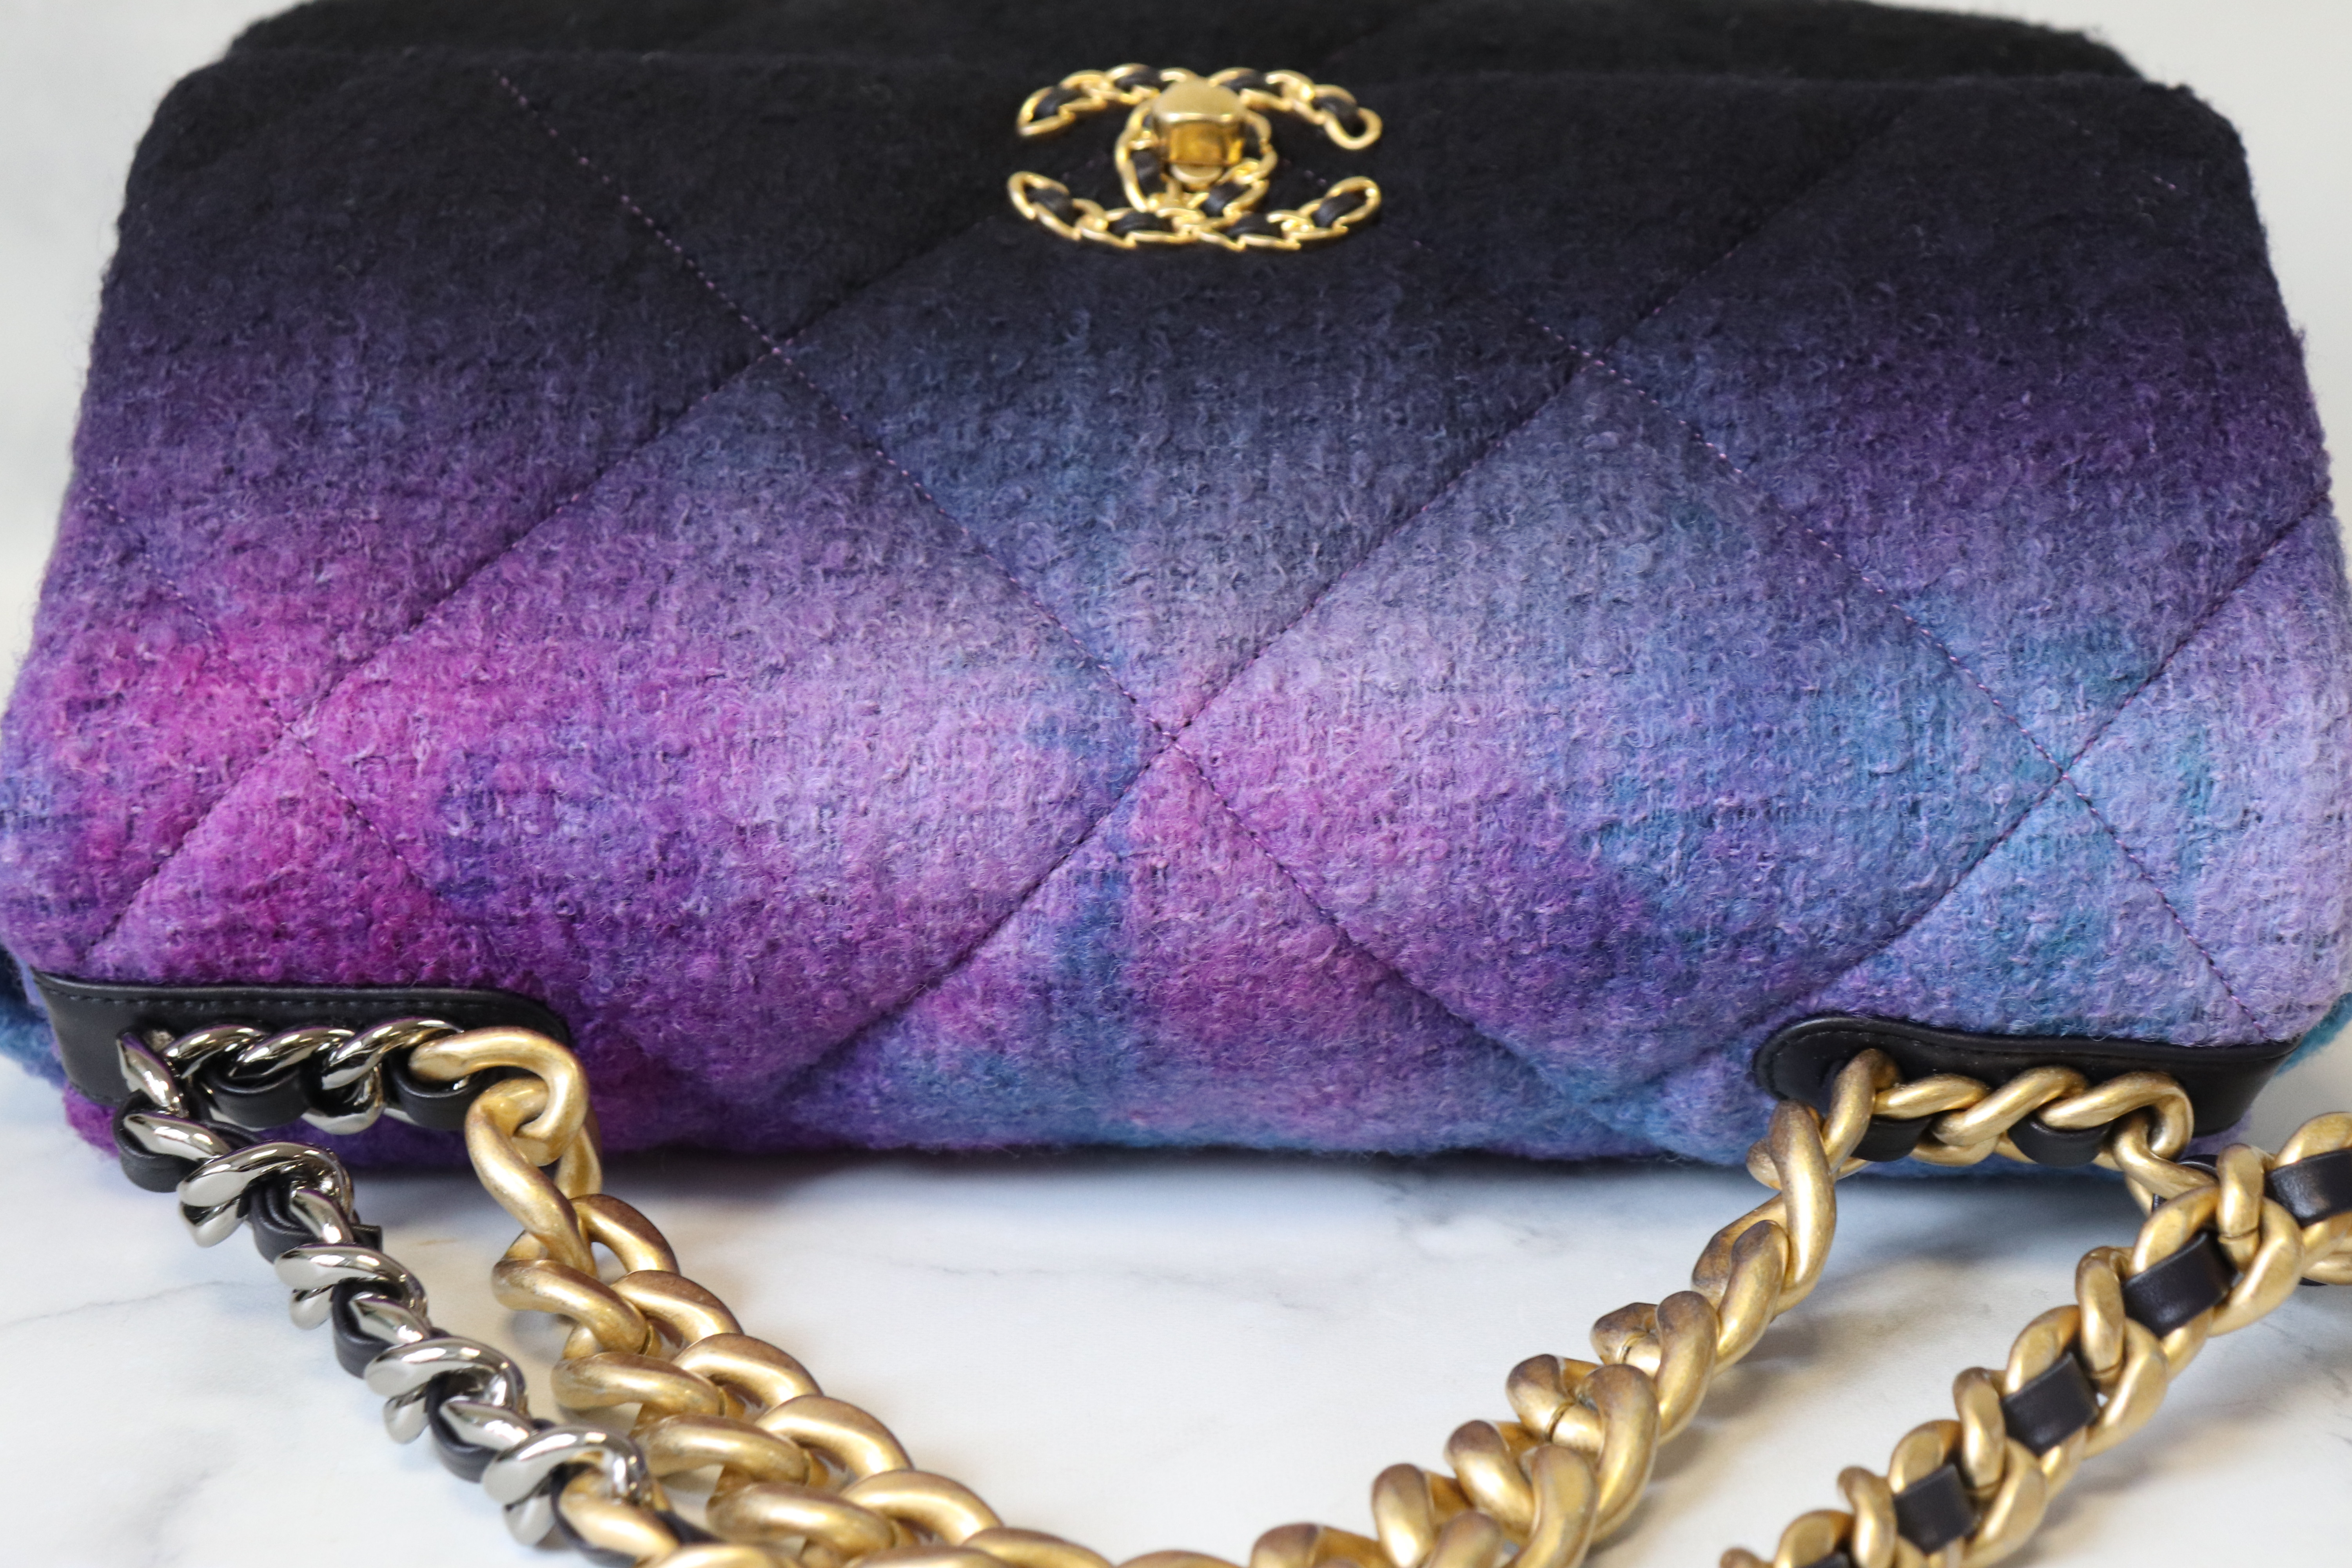 Chanel 19 tweed handbag Chanel Purple in Tweed - 34898818